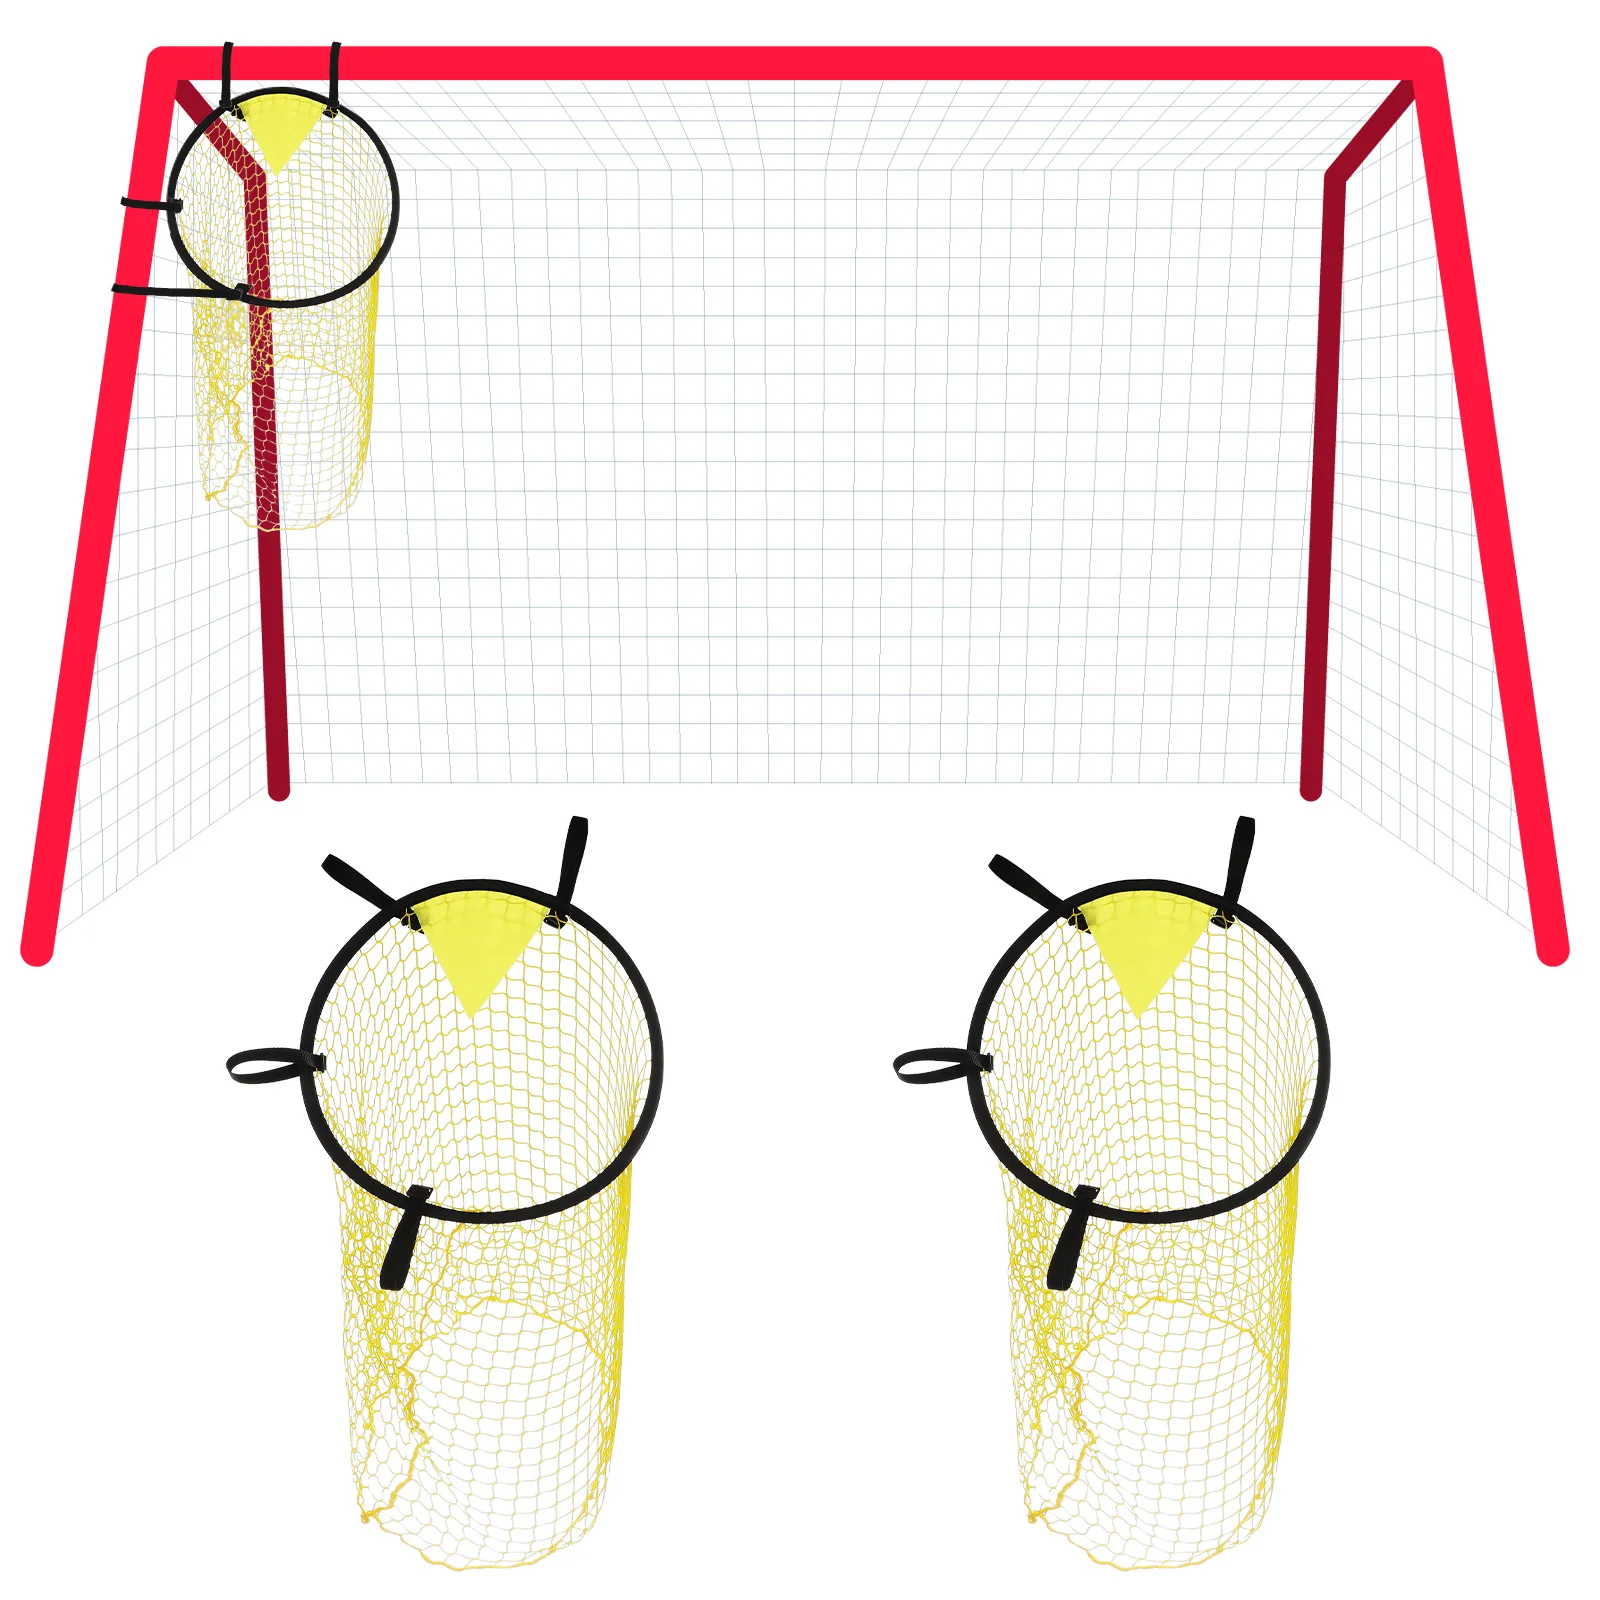 

2 Pcs Football Goal Pocket Kids Soccer Nets Balls Netting Net Balls Net Practice Polyester Indoor Child